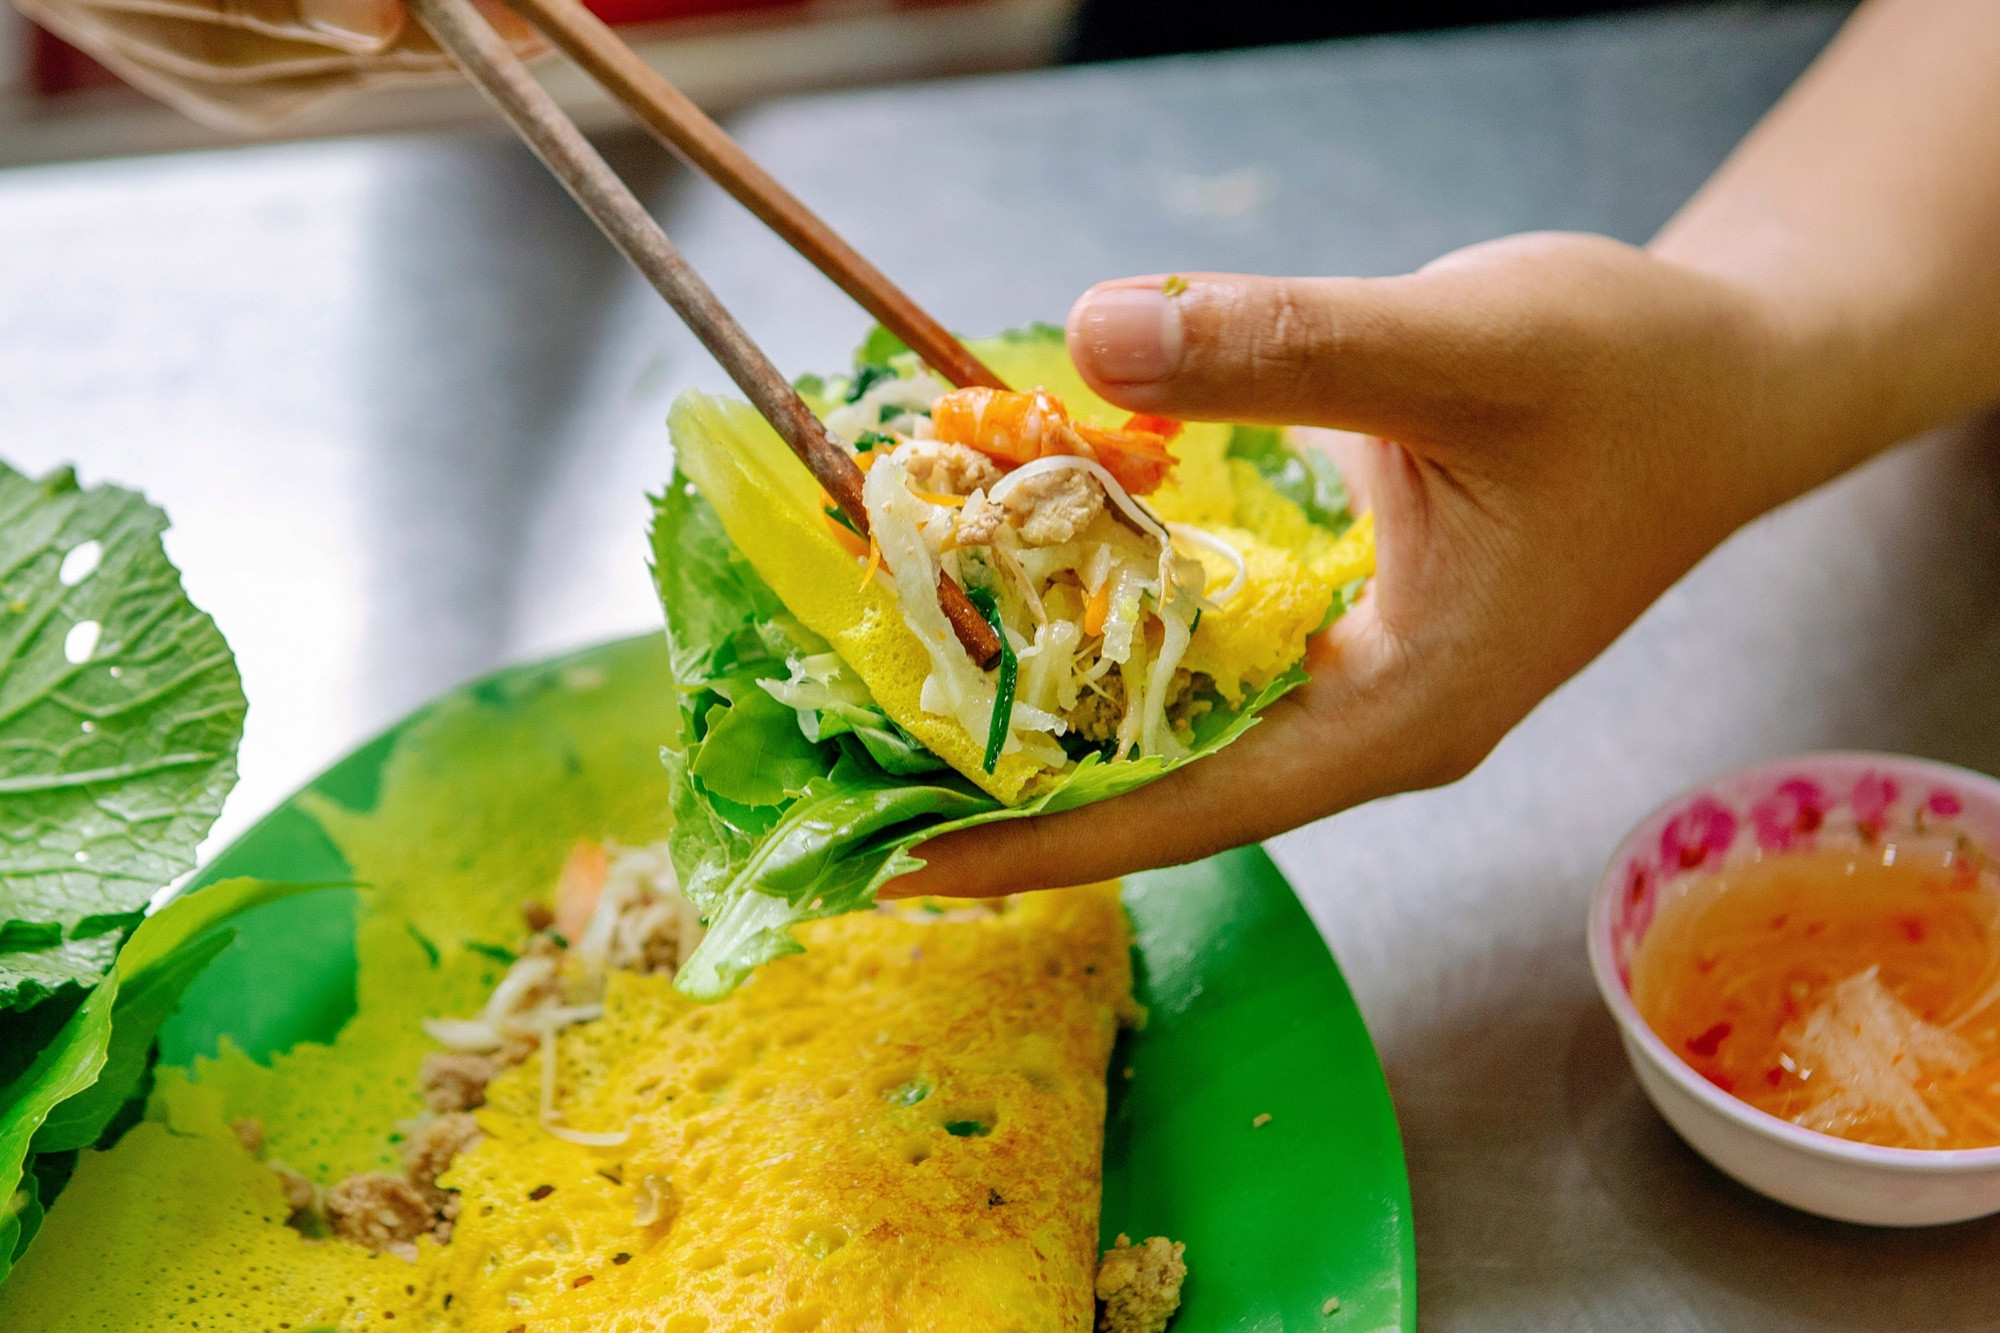 Nem lụi là món ăn truyền thống của miền Trung Việt Nam, với những miếng thịt nướng thơm ngon được cuộn bọc trong lá chuối. Khi ăn, bạn có thể thêm vào chén nước chấm để tăng thêm hương vị cho món ăn. Xem hình ảnh để khám phá thêm về đặc sản này.